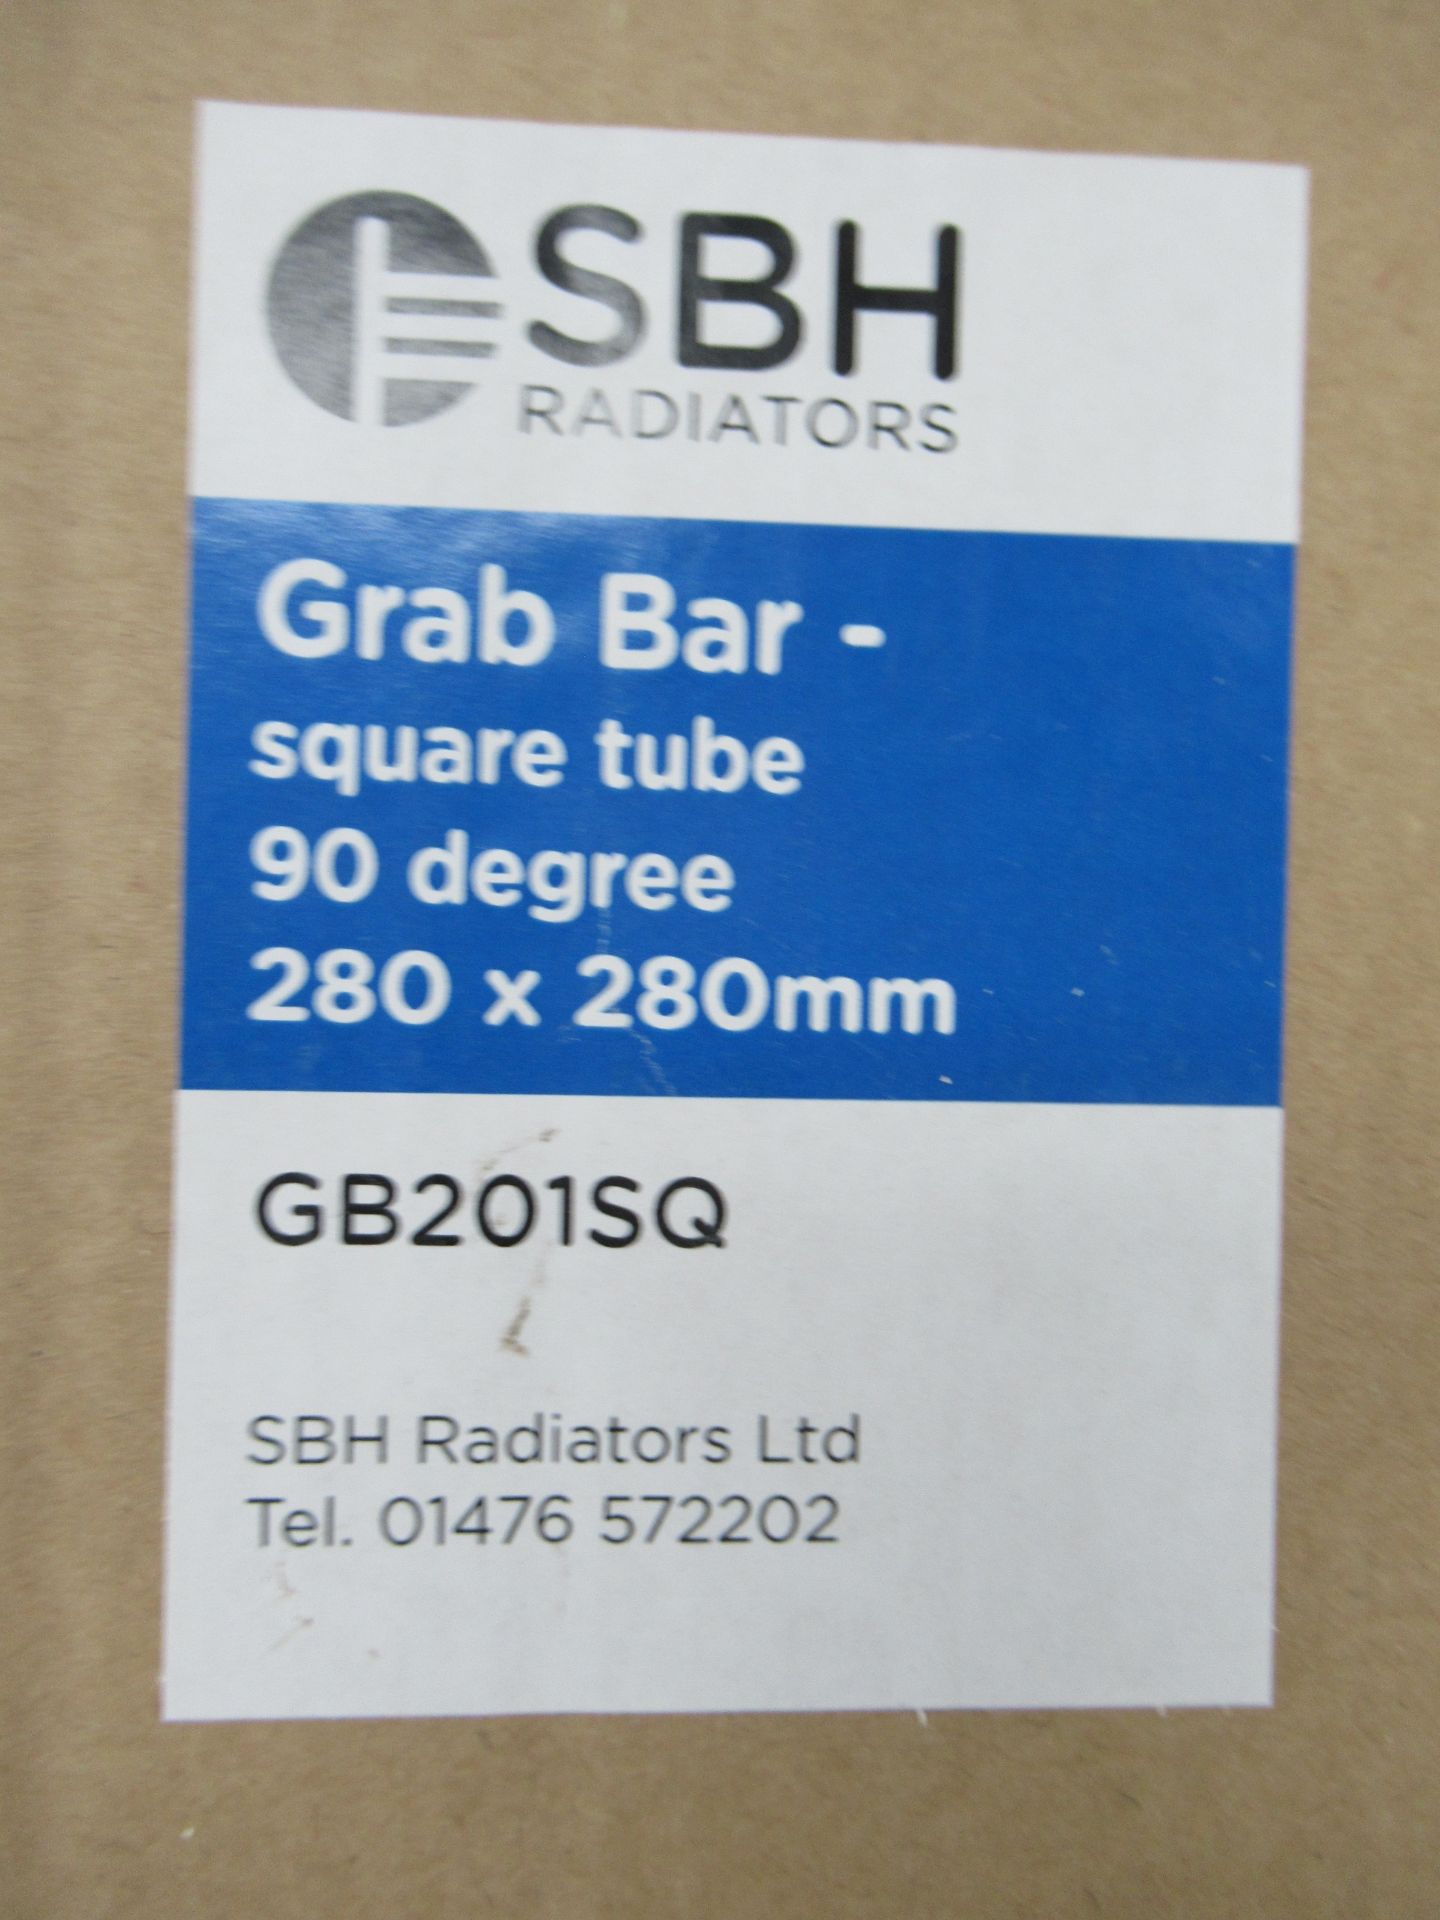 3x SBH Radiators Grab Bar - Square Tube - 90 Degree - 280 x 280mm - Image 2 of 2